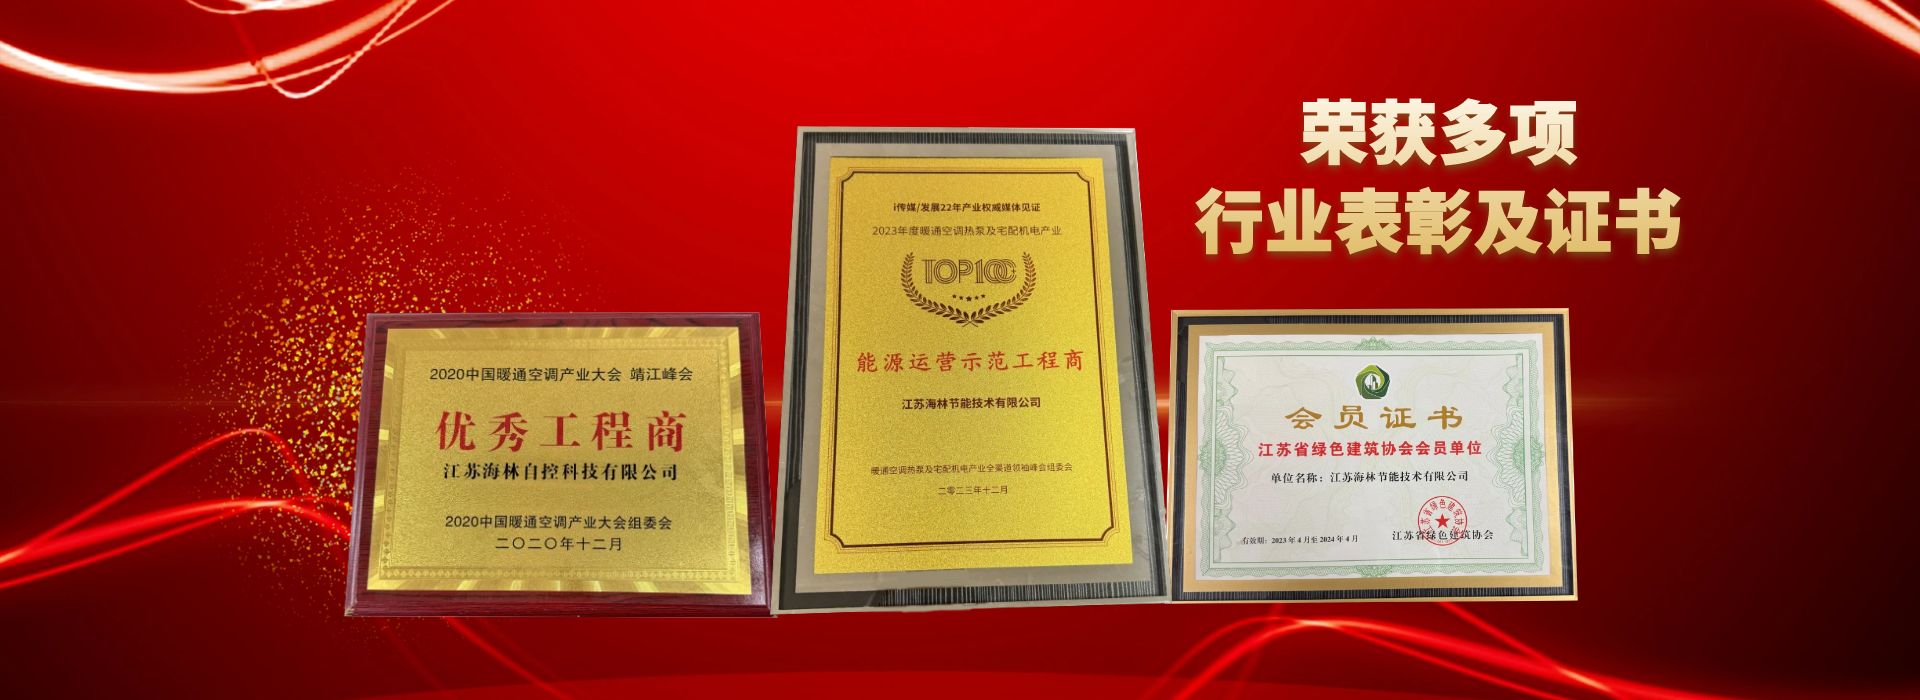 江苏海林荣获多项行业表彰及证书